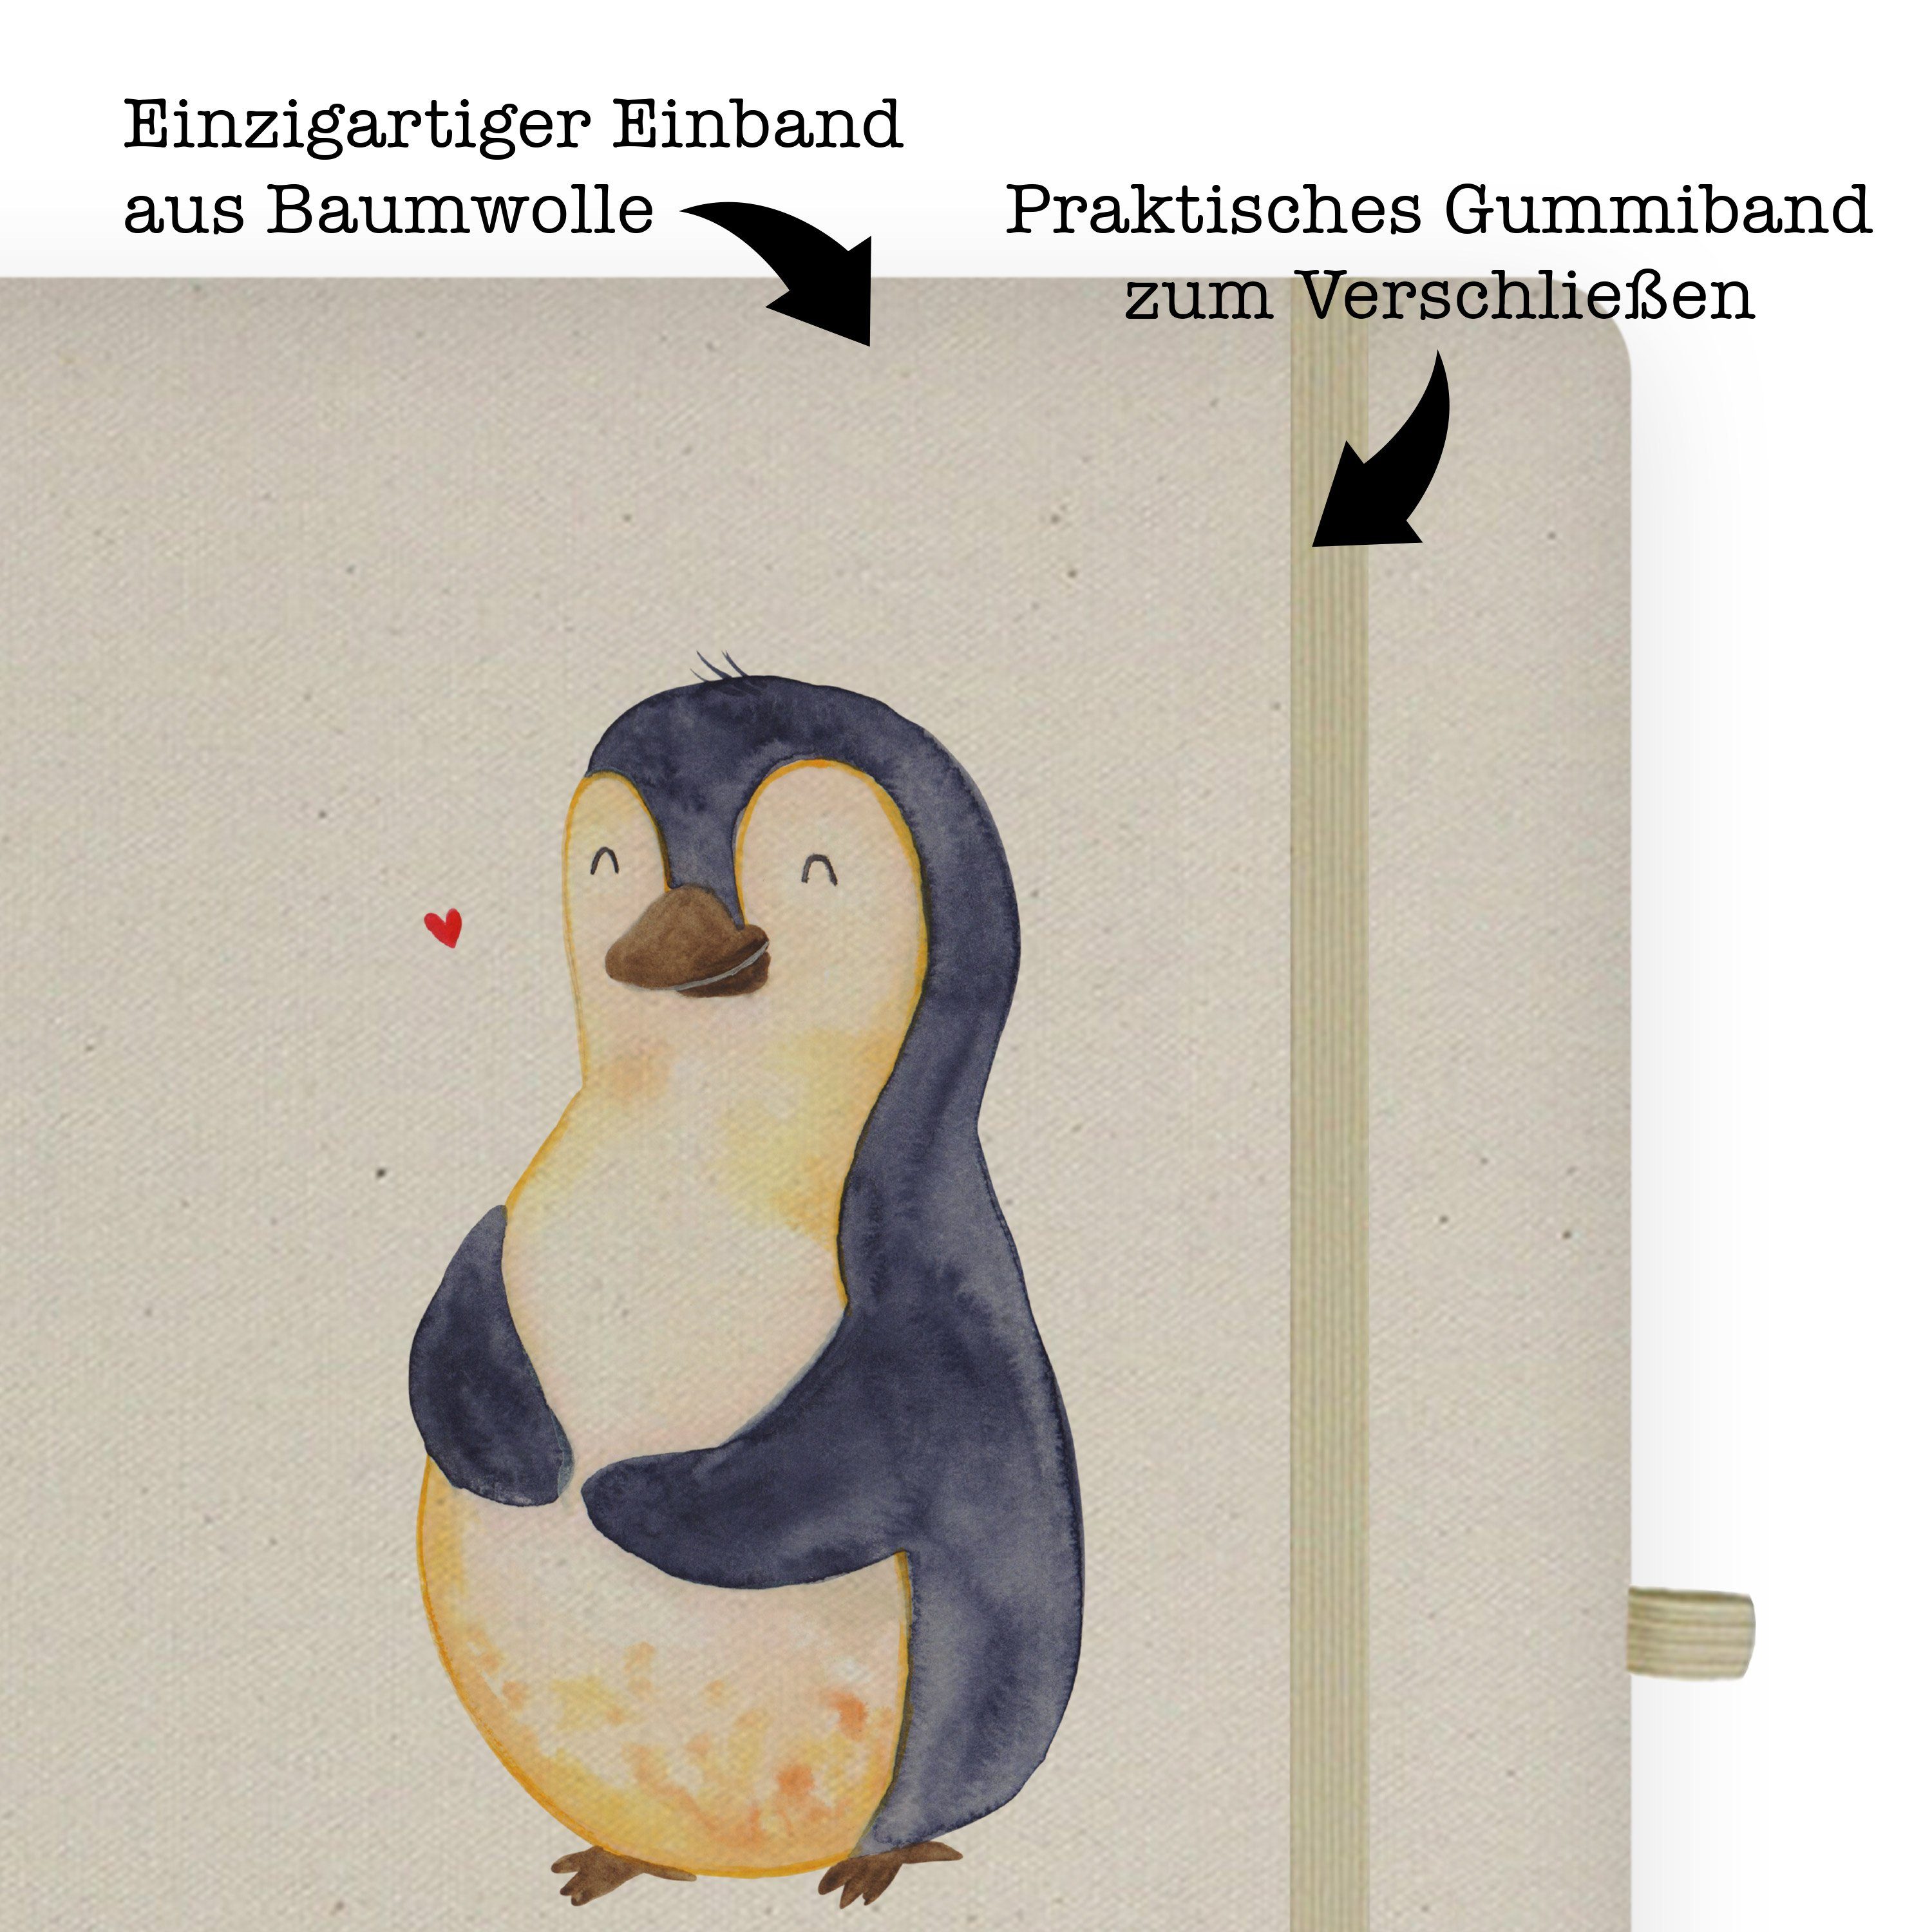 Mr. & Mrs. Panda Panda Tagebuch, - Transparent Mrs. Notizbuch - glücklich Diät Notizheft, & Pinguin Geschenk, Mr